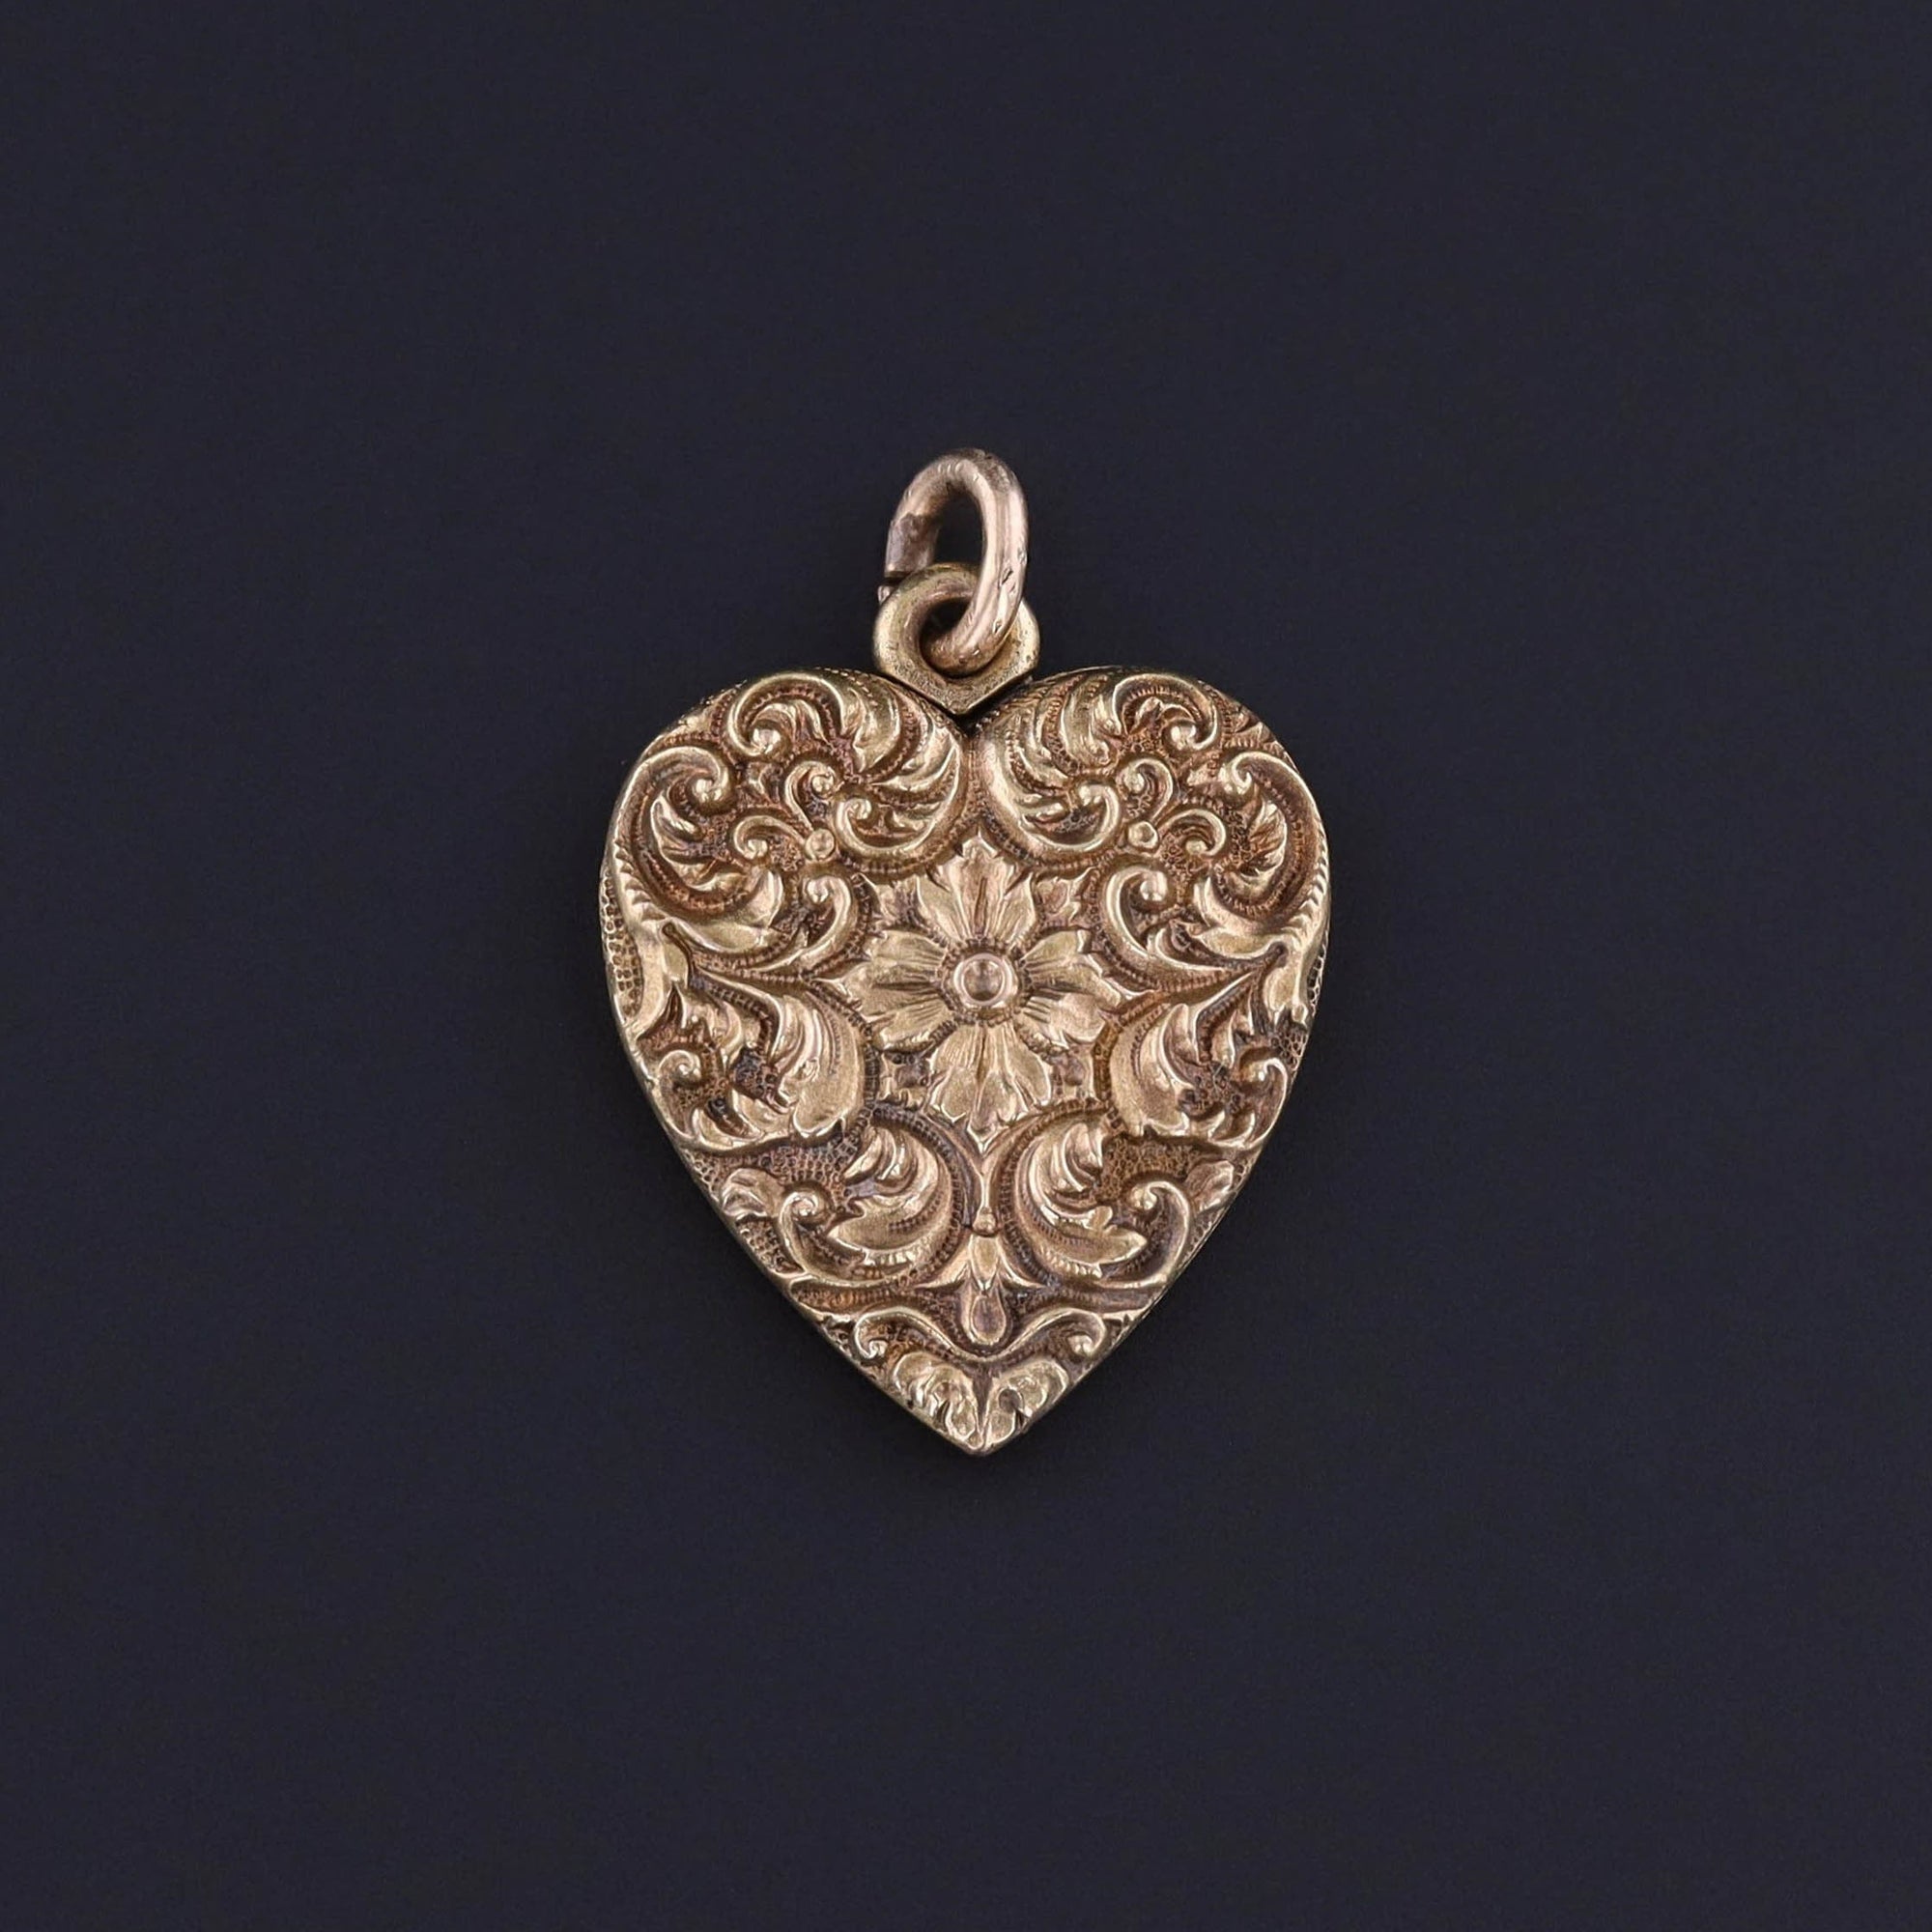 Antique Heart Locket of 14k Gold